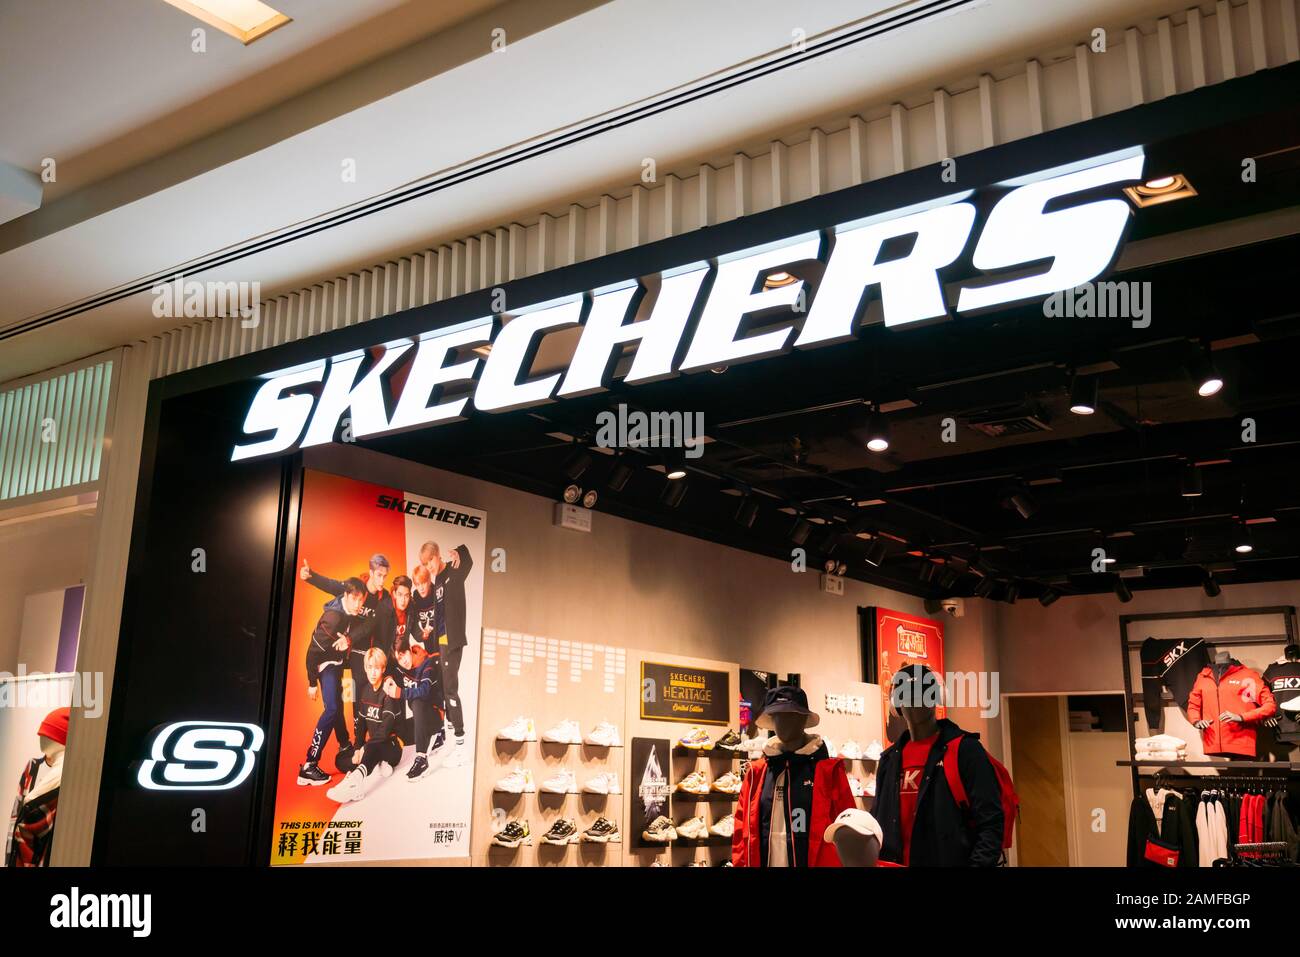 Azienda americana di calzature per lo stile di vita e le prestazioni  negozio Skechers e logo visto a Shanghai Foto stock - Alamy